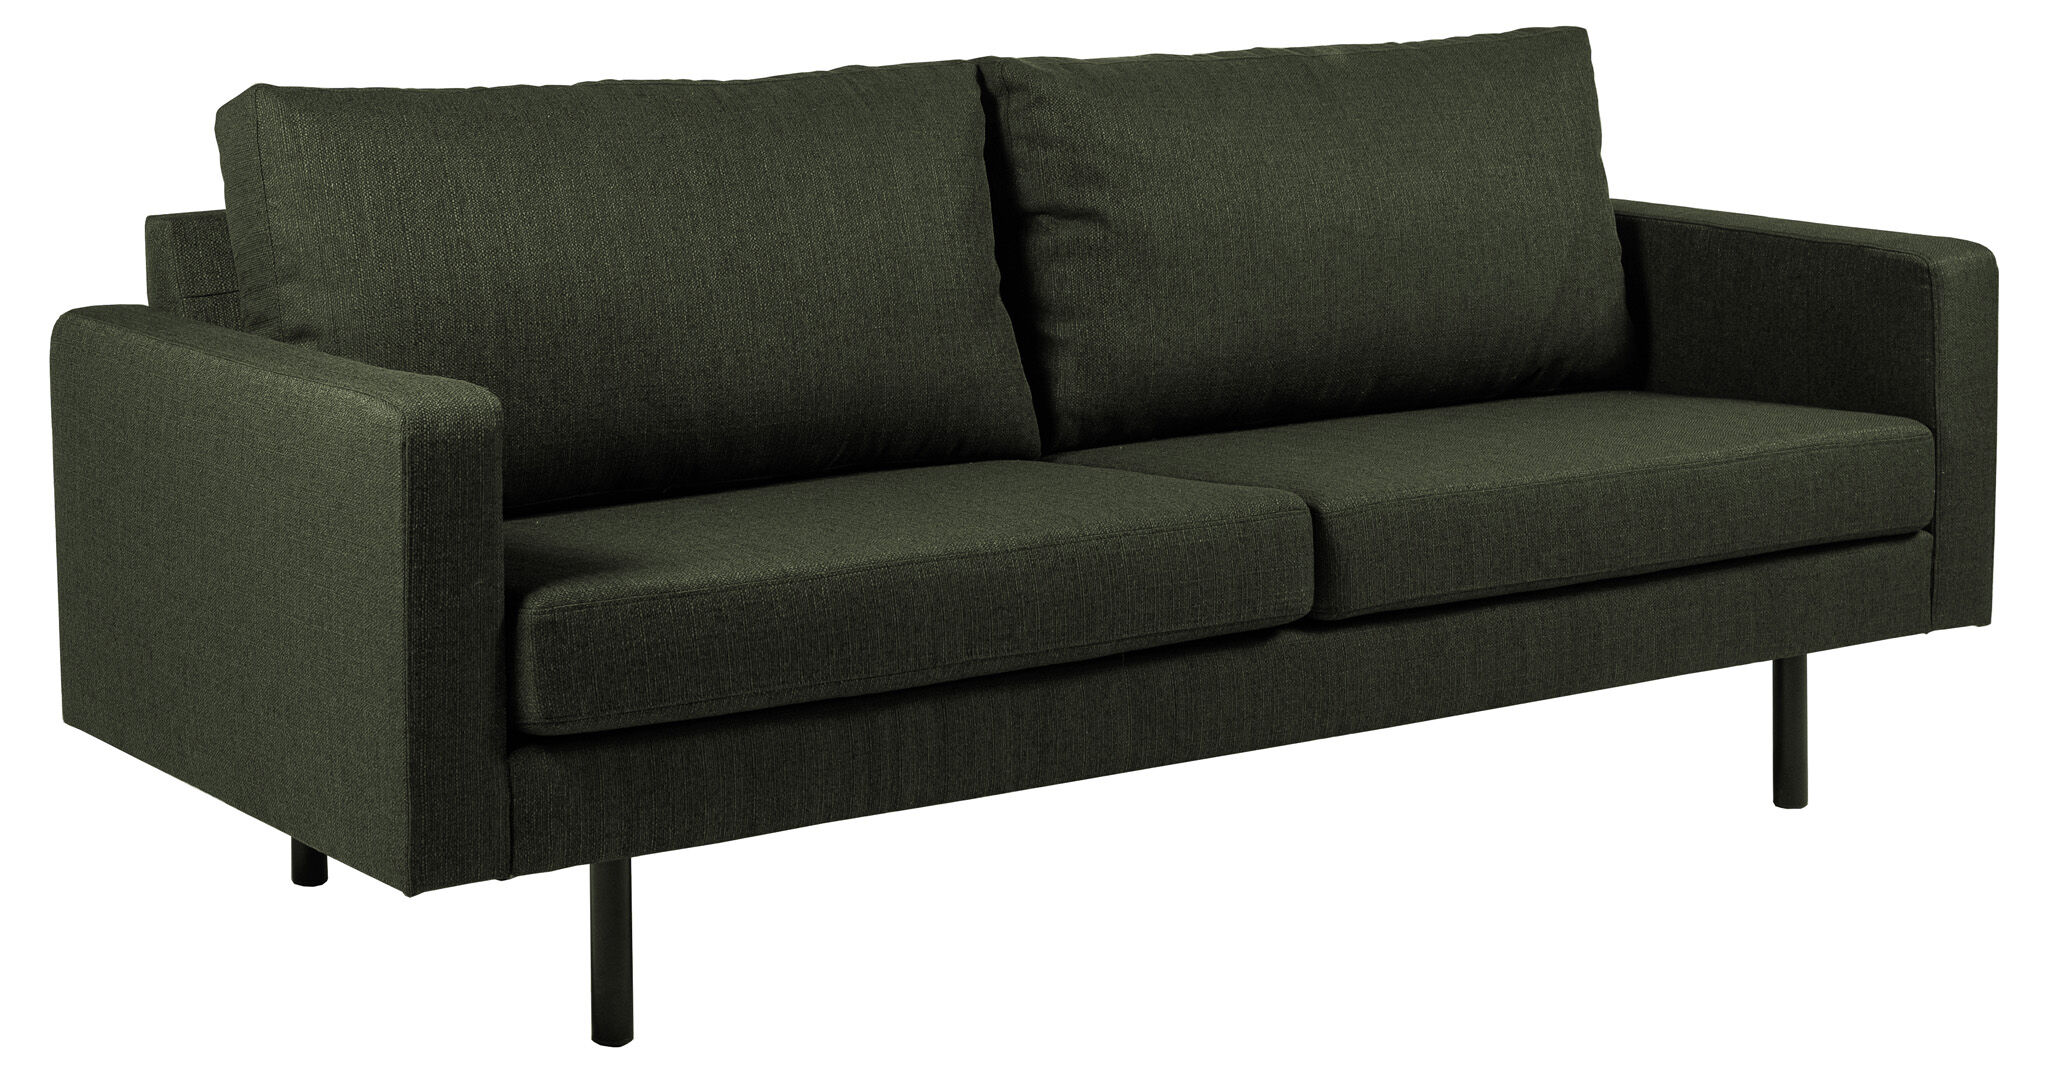 Chicago 2,5 -seters sofa med ben i svart metall. Grønnflaske